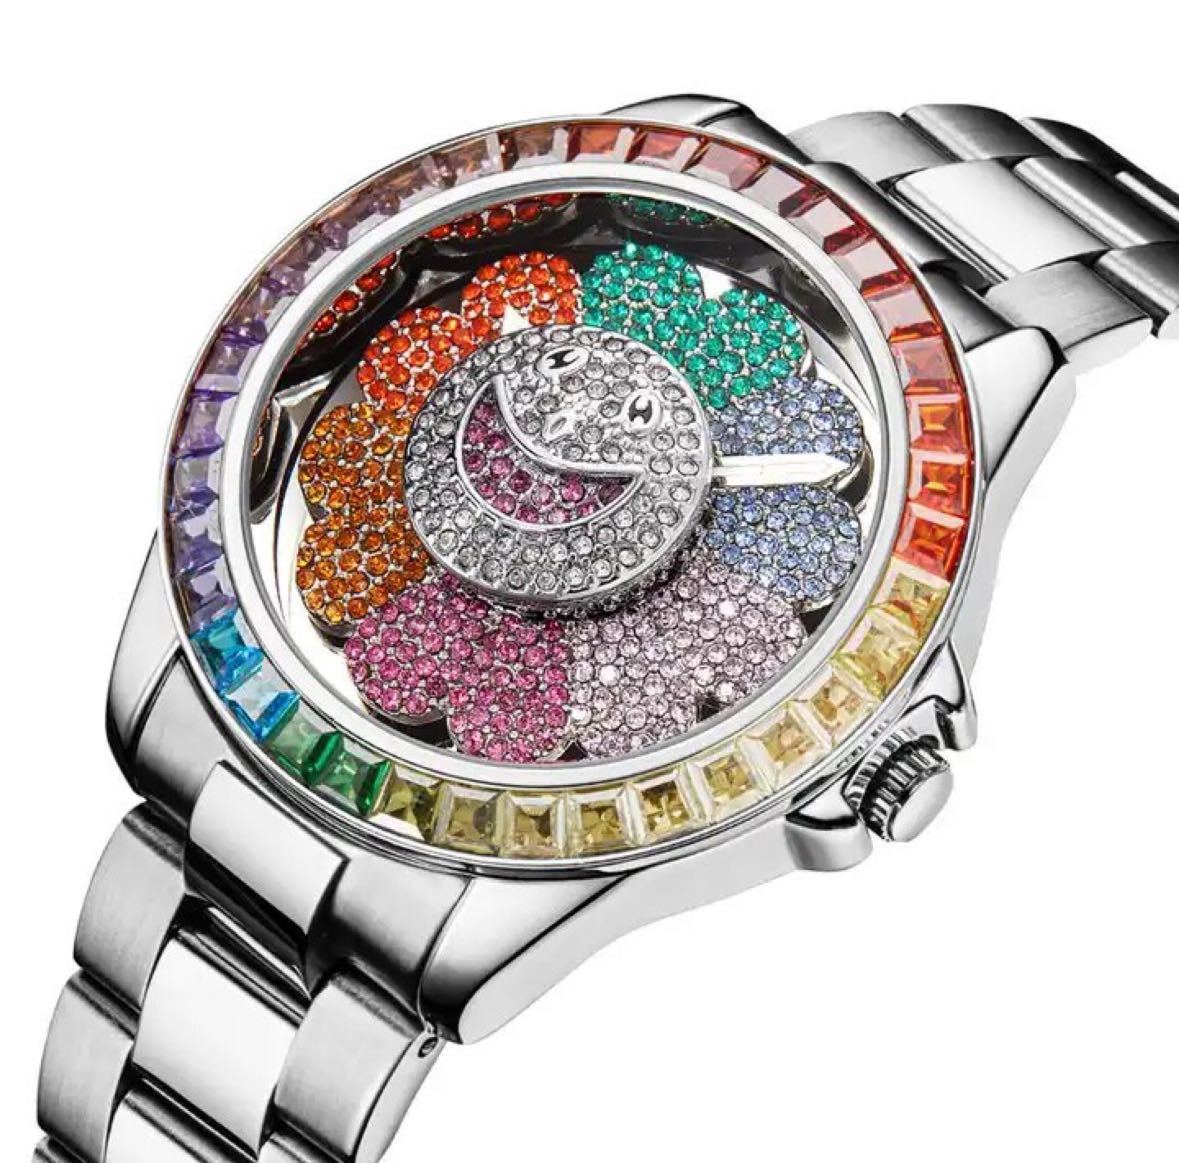 【日本未発売 アメリカ価格30,000円】MISSFOX ウブロオマージュウォッチ メンズ腕時計 高級腕時計 クォーツムーブメントの画像1